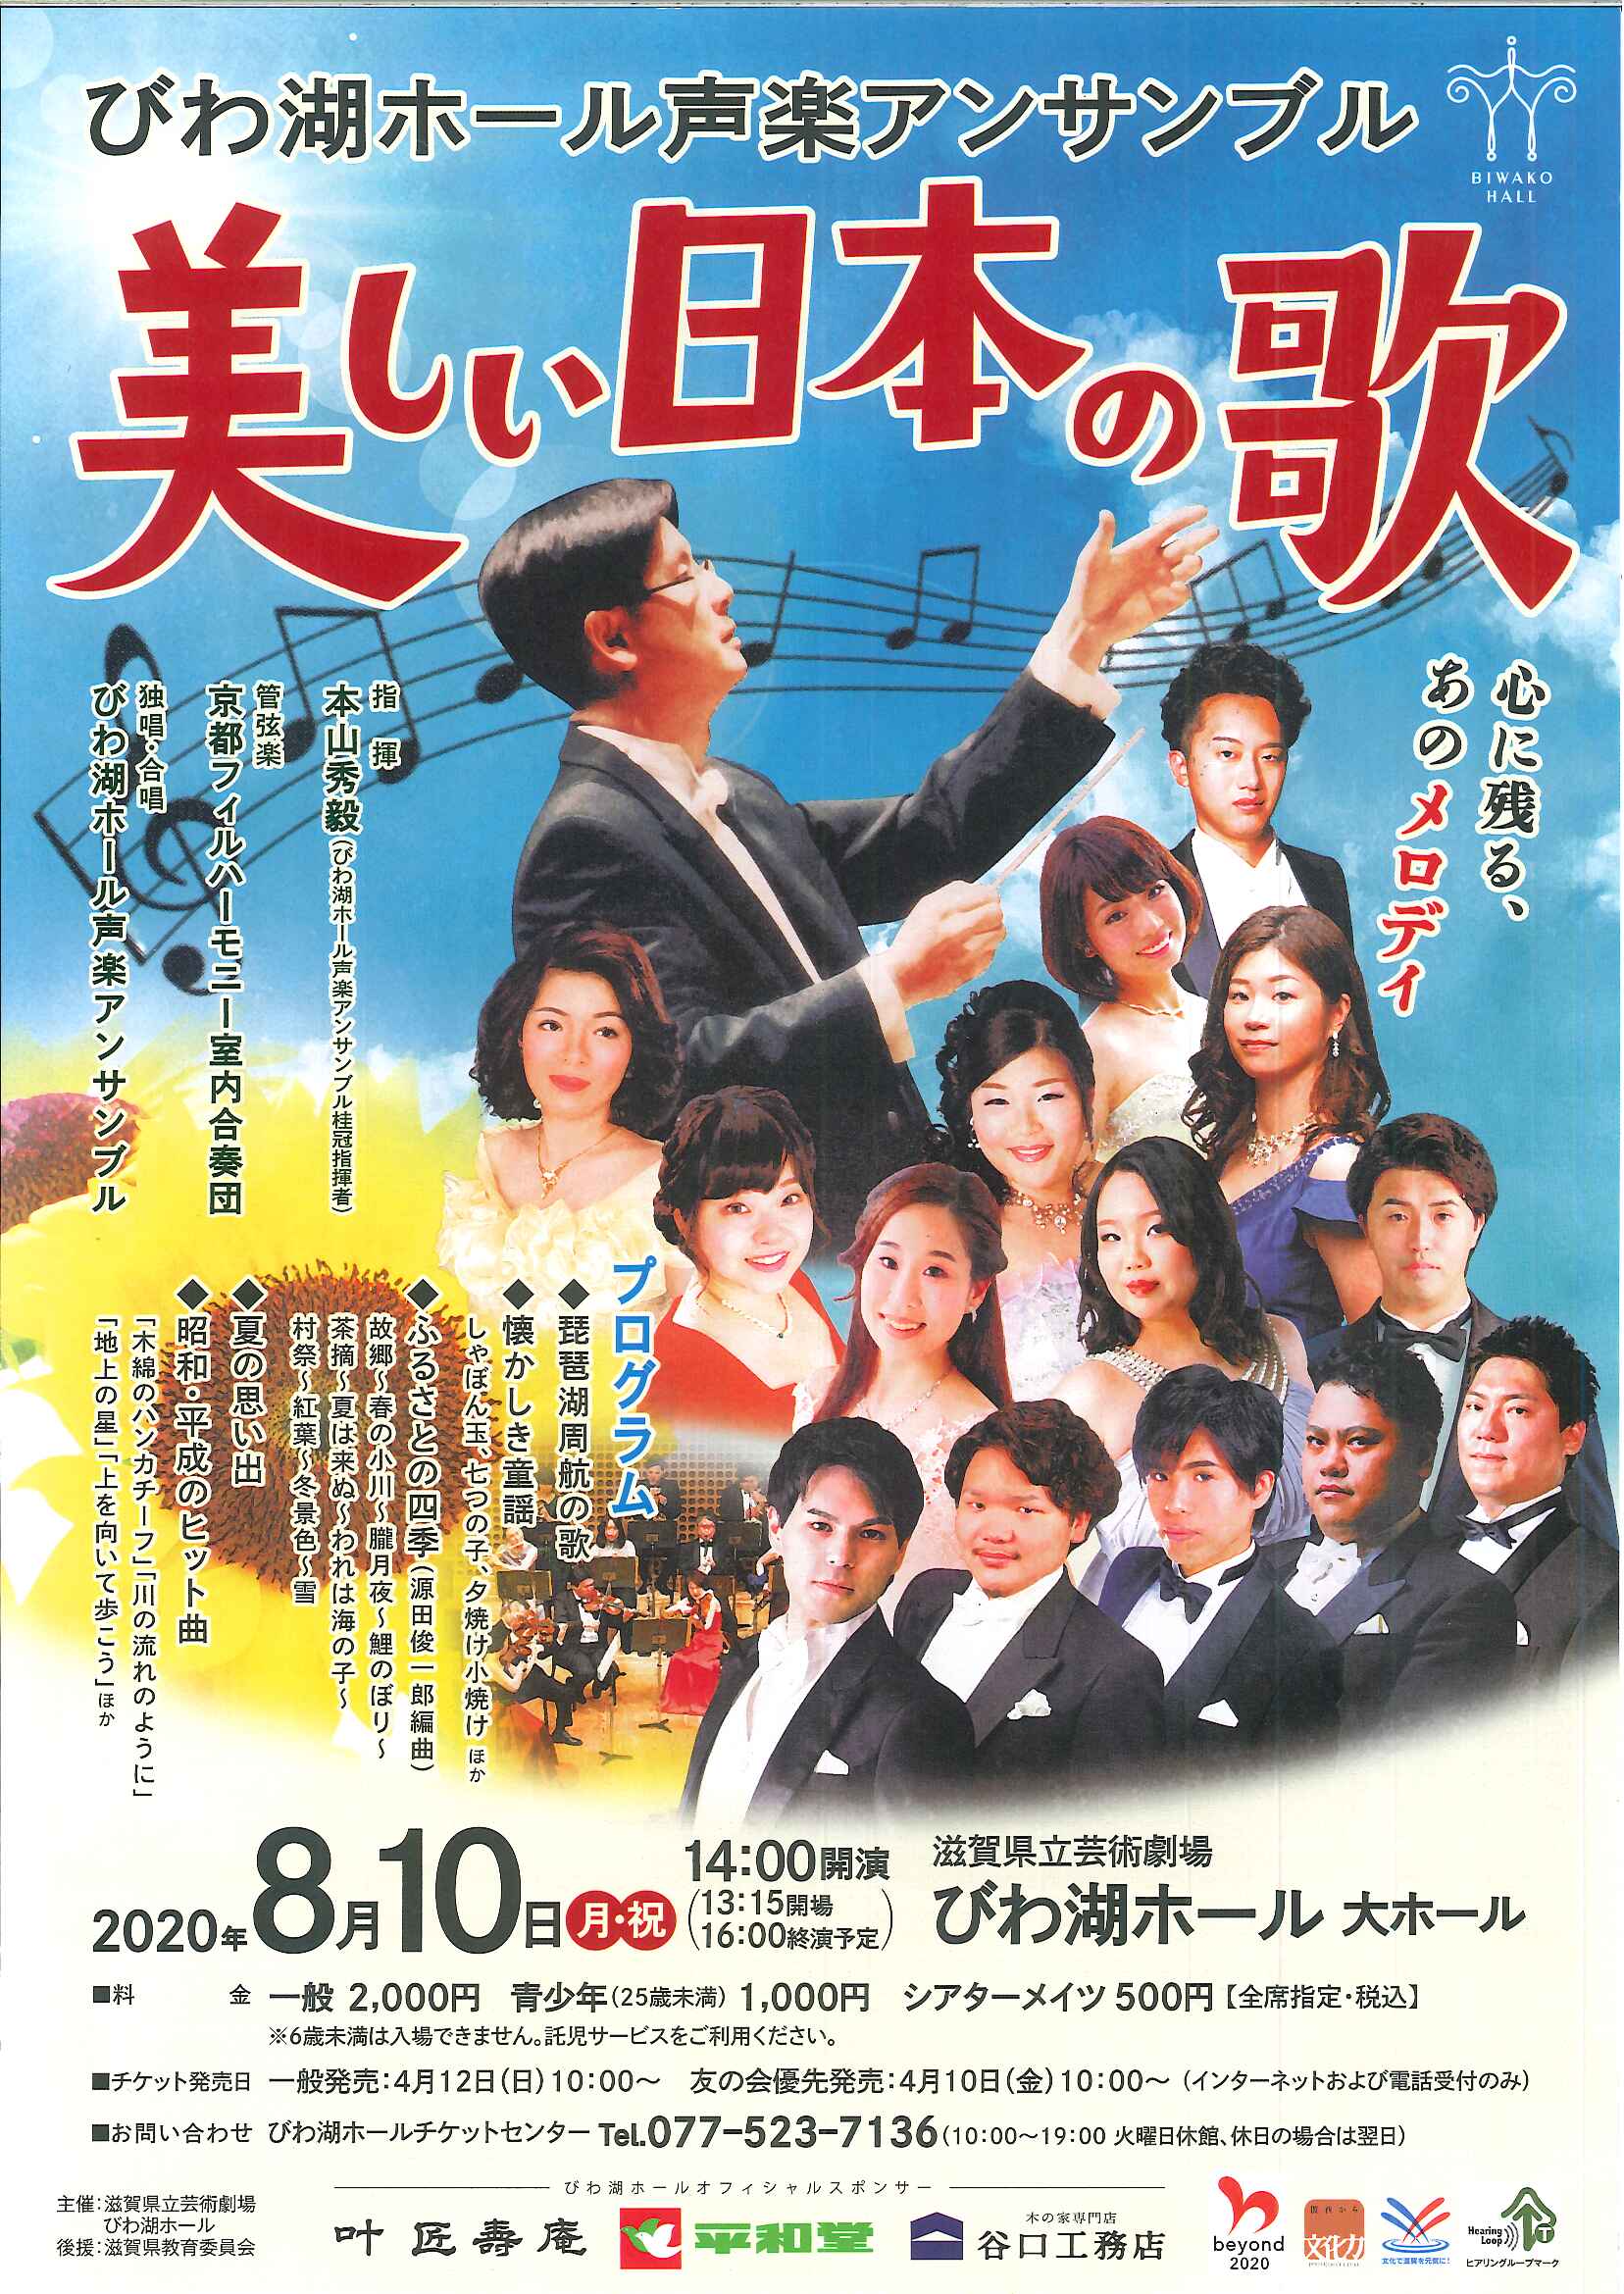 「びわ湖ホール声楽アンサンブル 美しい日本の歌」のチラシ